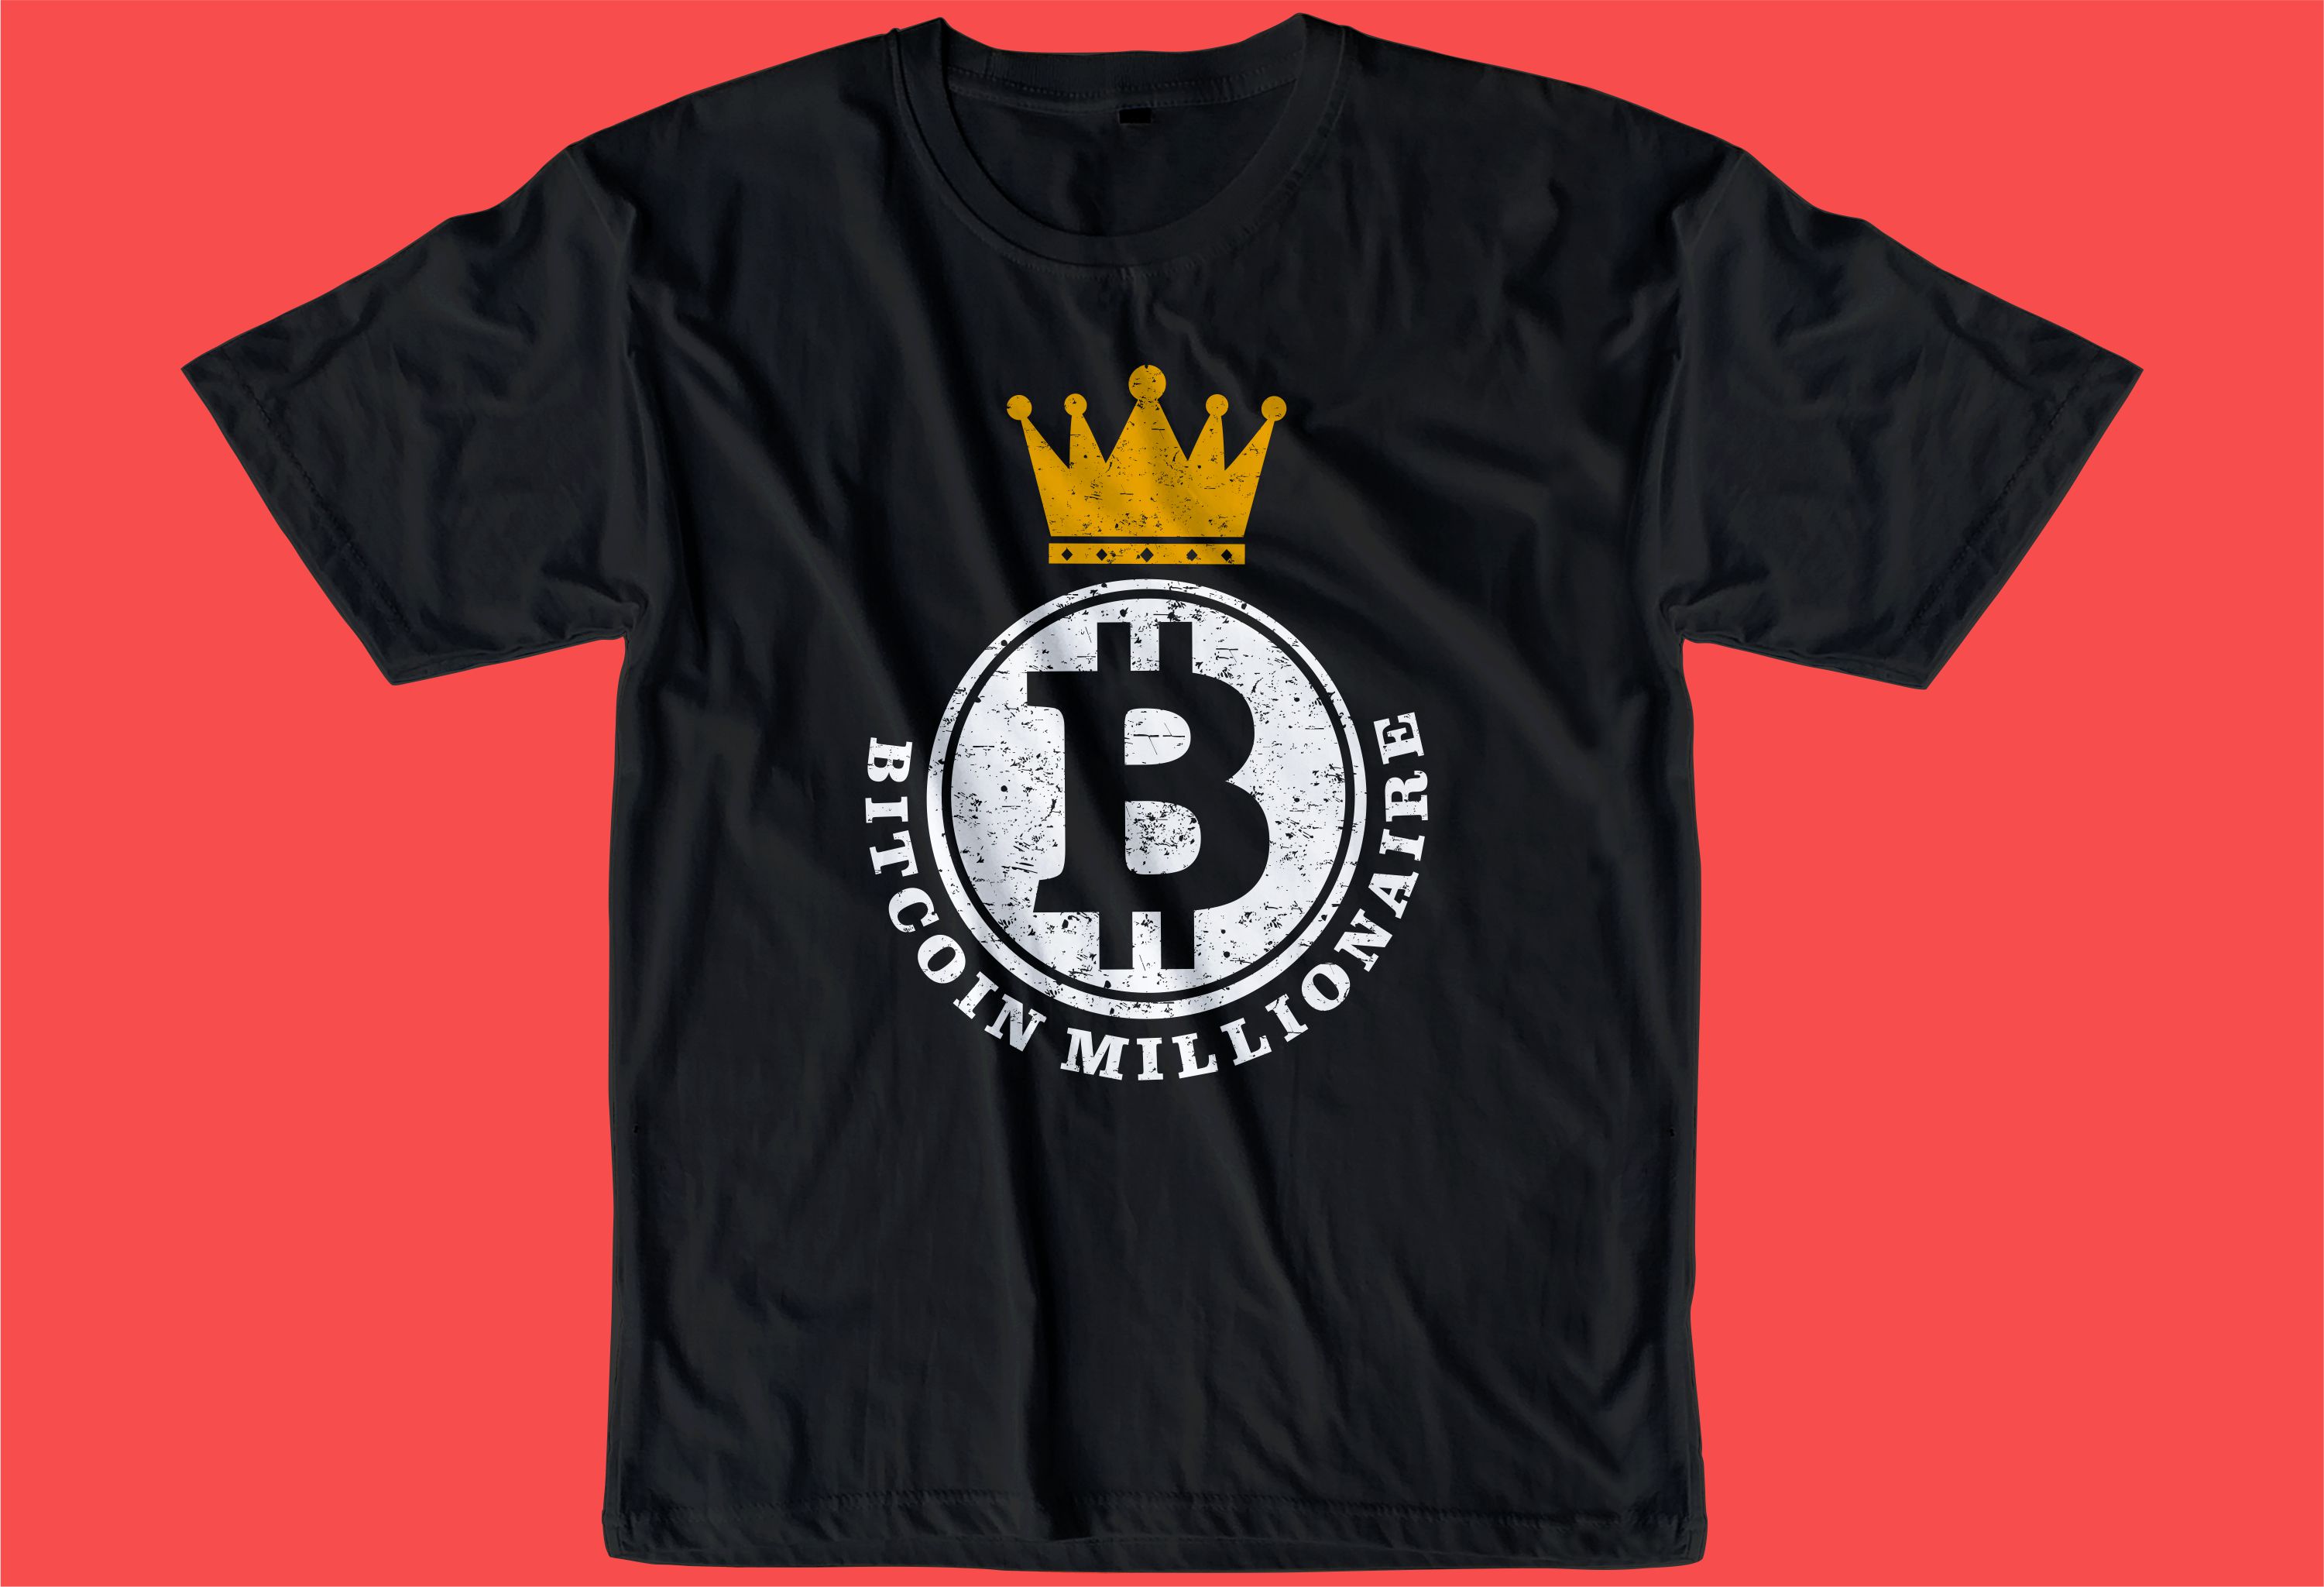 crypto-bitcoin-t-shirt-design-bundle-2